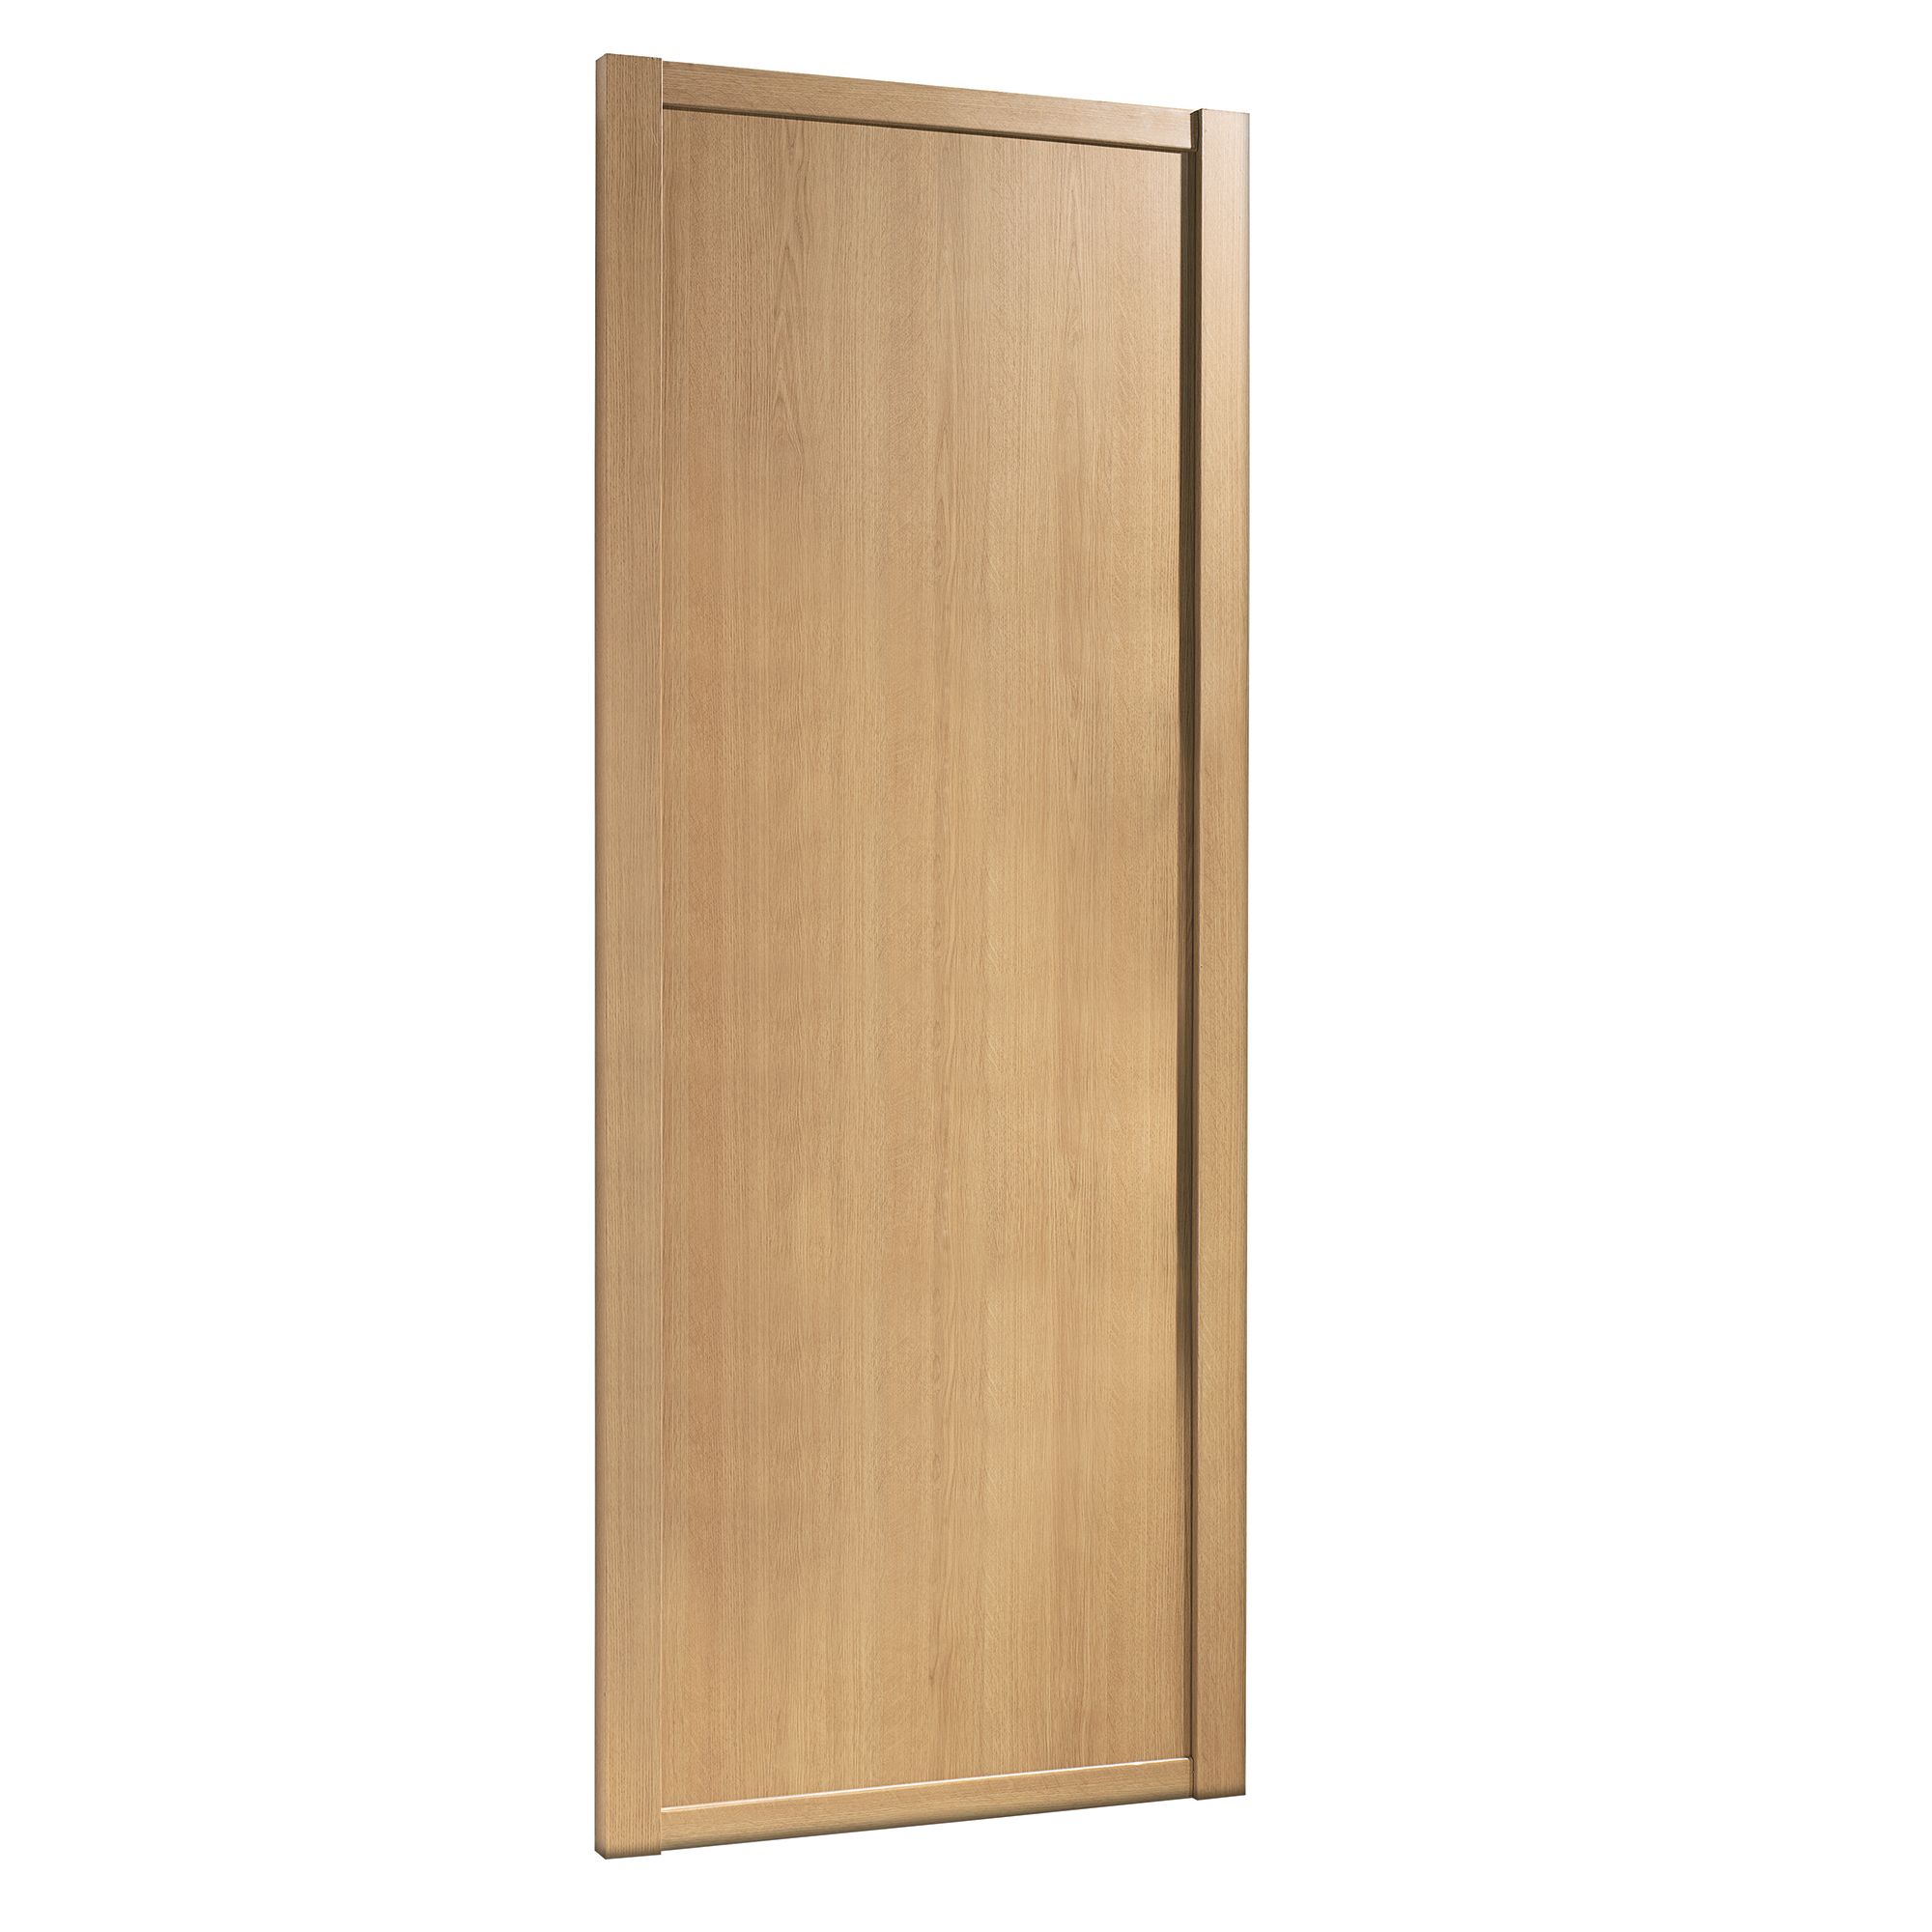 Spacepro Classic Shaker Oak effect Sliding wardrobe door (H) 2220mm x (W) 610mm